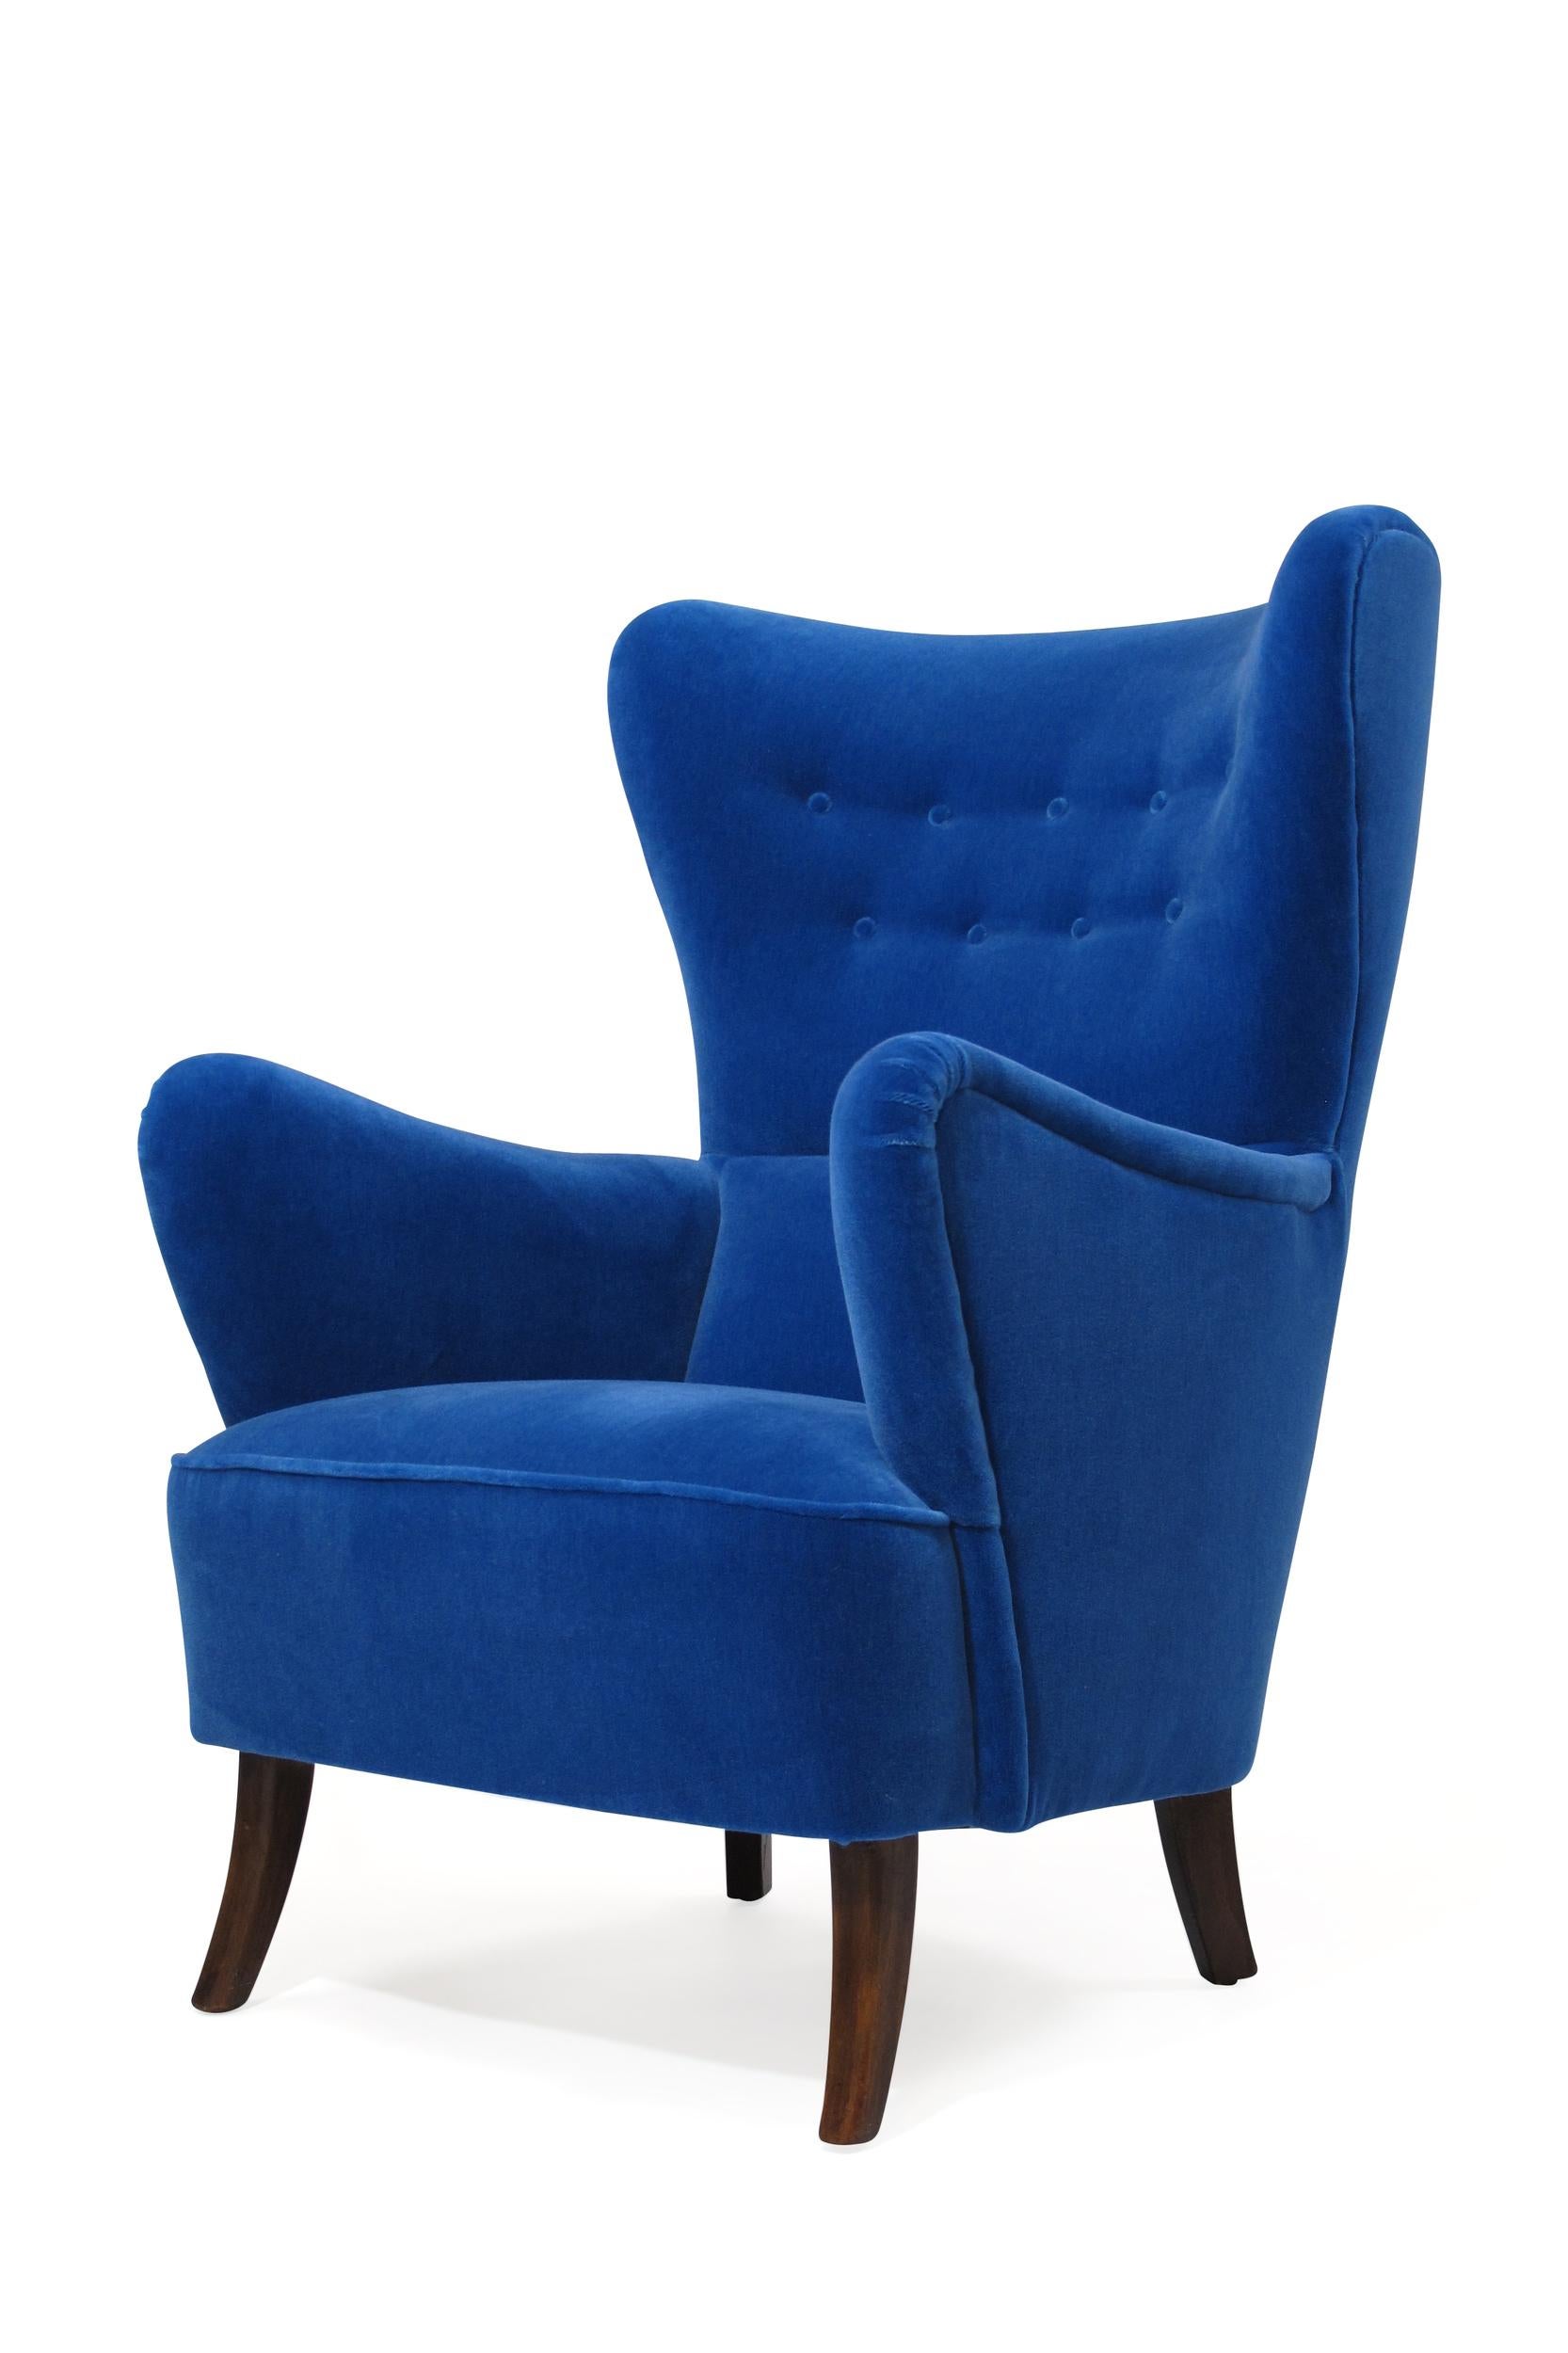 Scandinavian Modern 1950s Highback Lounge Chair in Blue Mohair